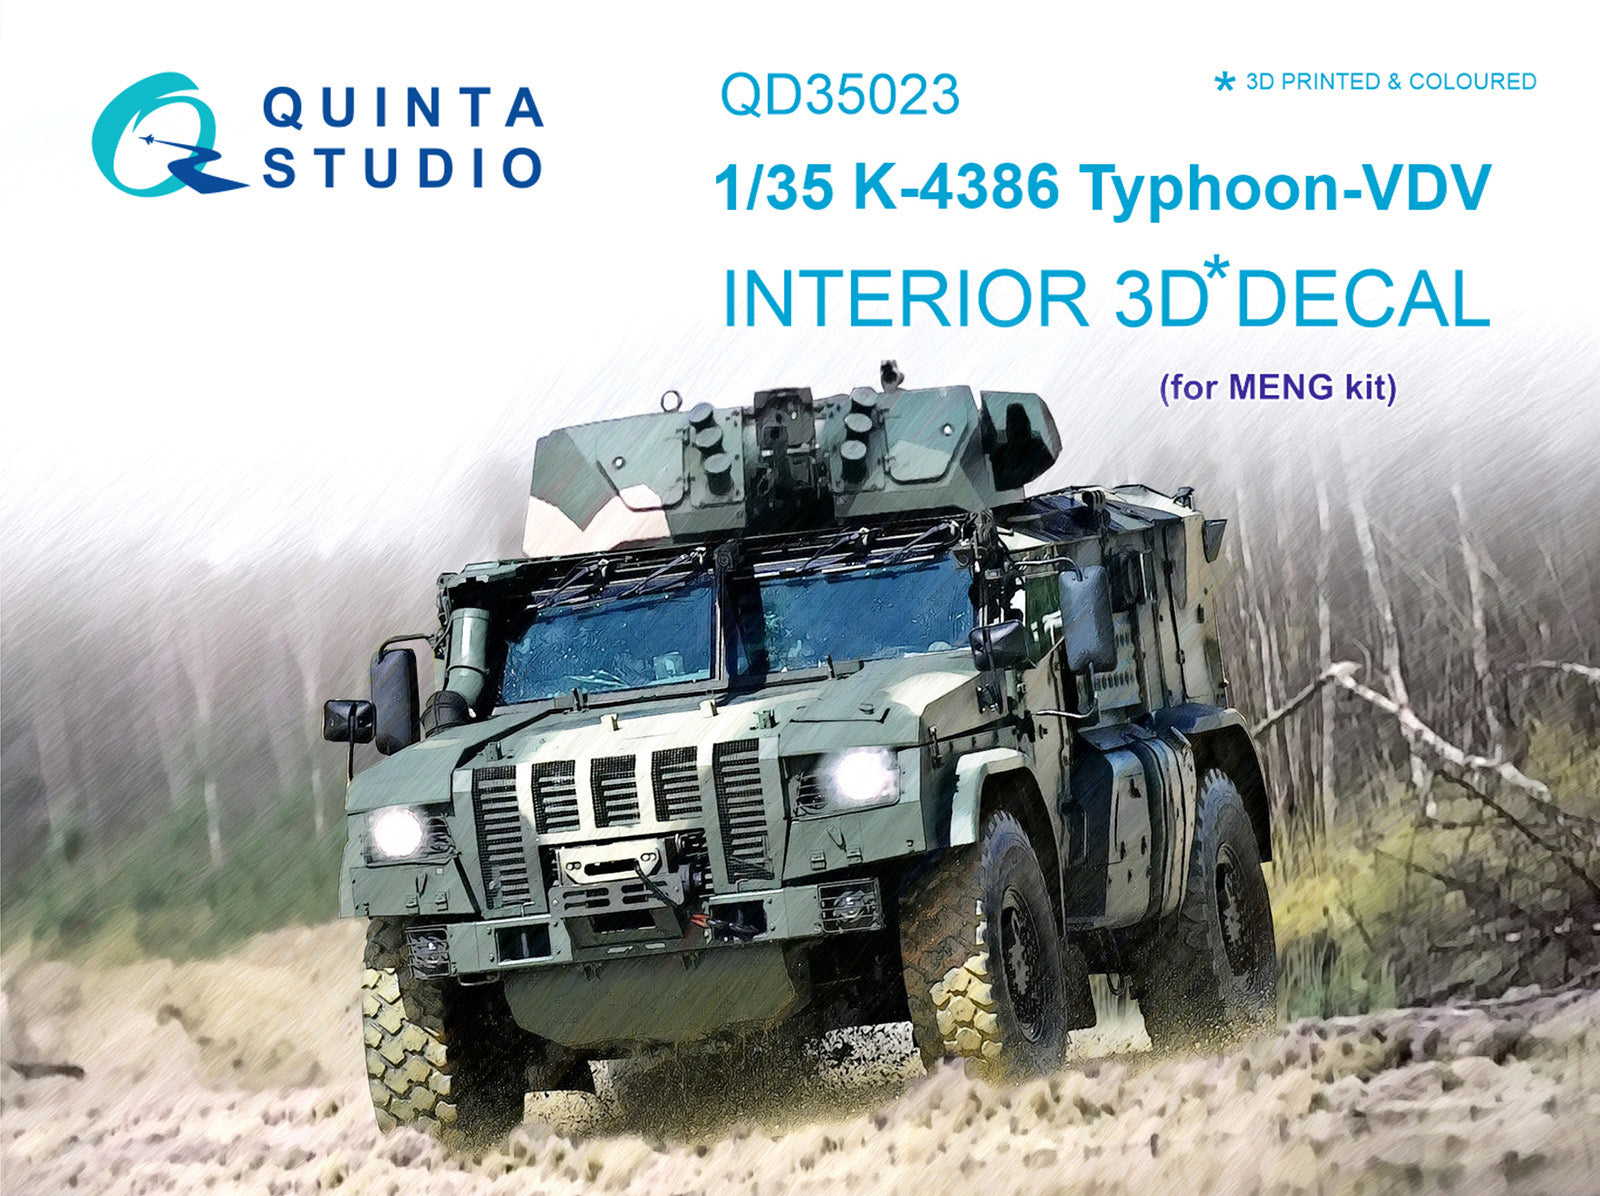 Quinta Studio - 1/35 K-4386 Typhoon VDV QD35023 for Meng kit